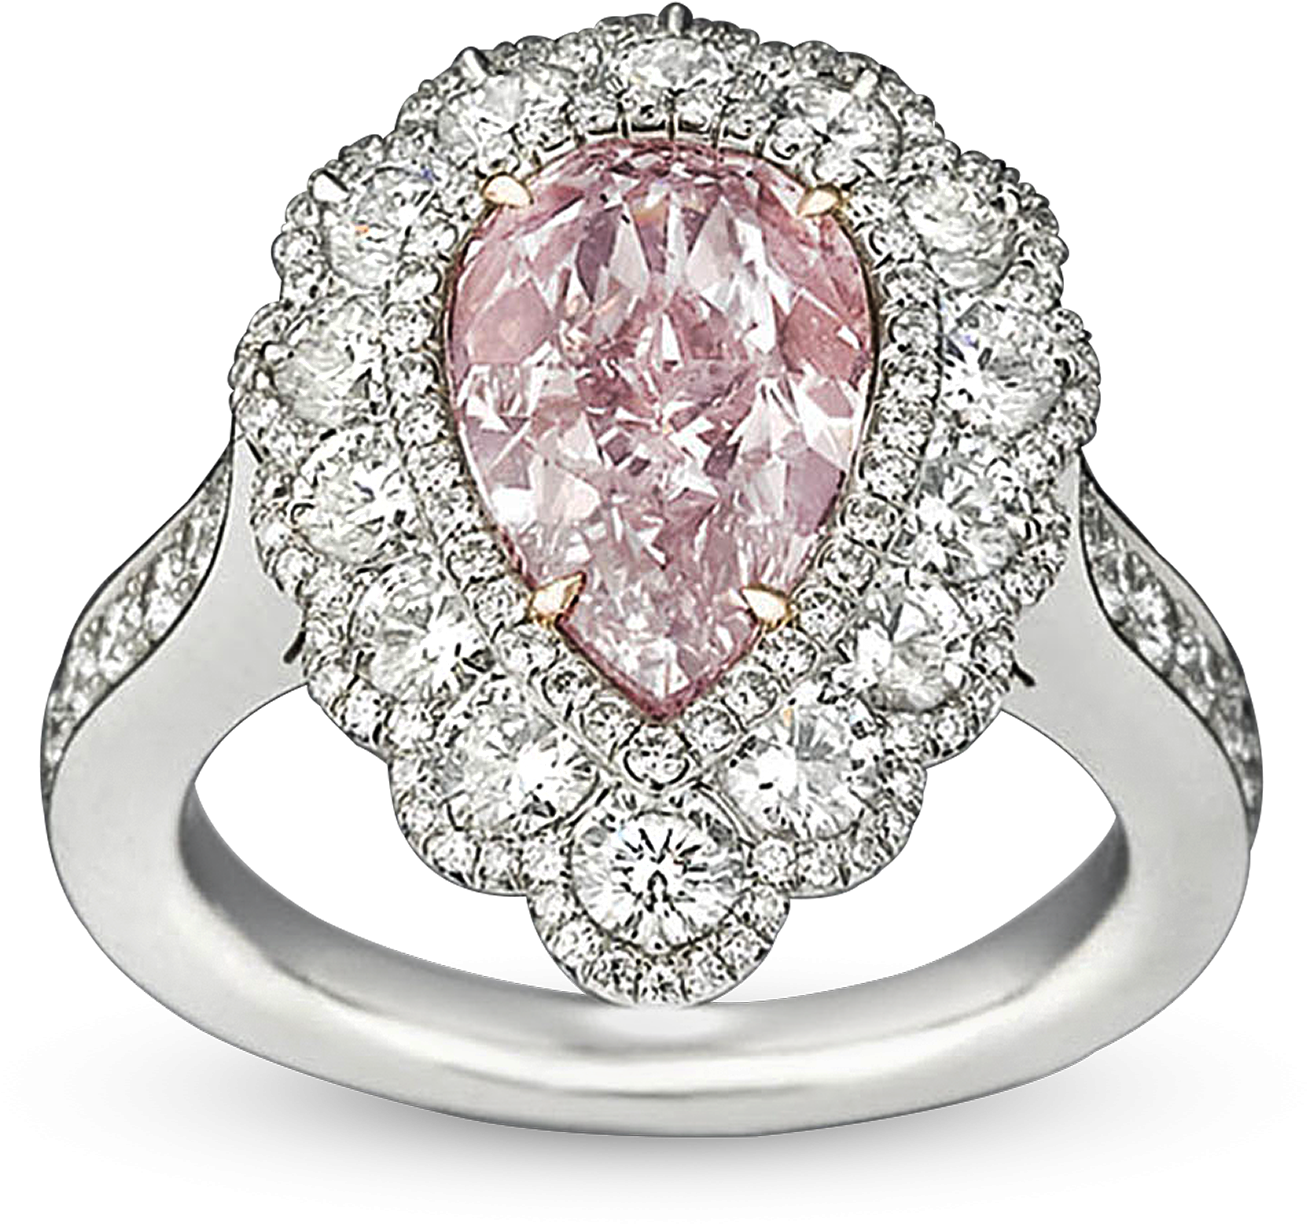 Fancy Pink Diamond Ring, - 2.58 Carat Fancy Pink Diamond Ring (2500x2000), Png Download